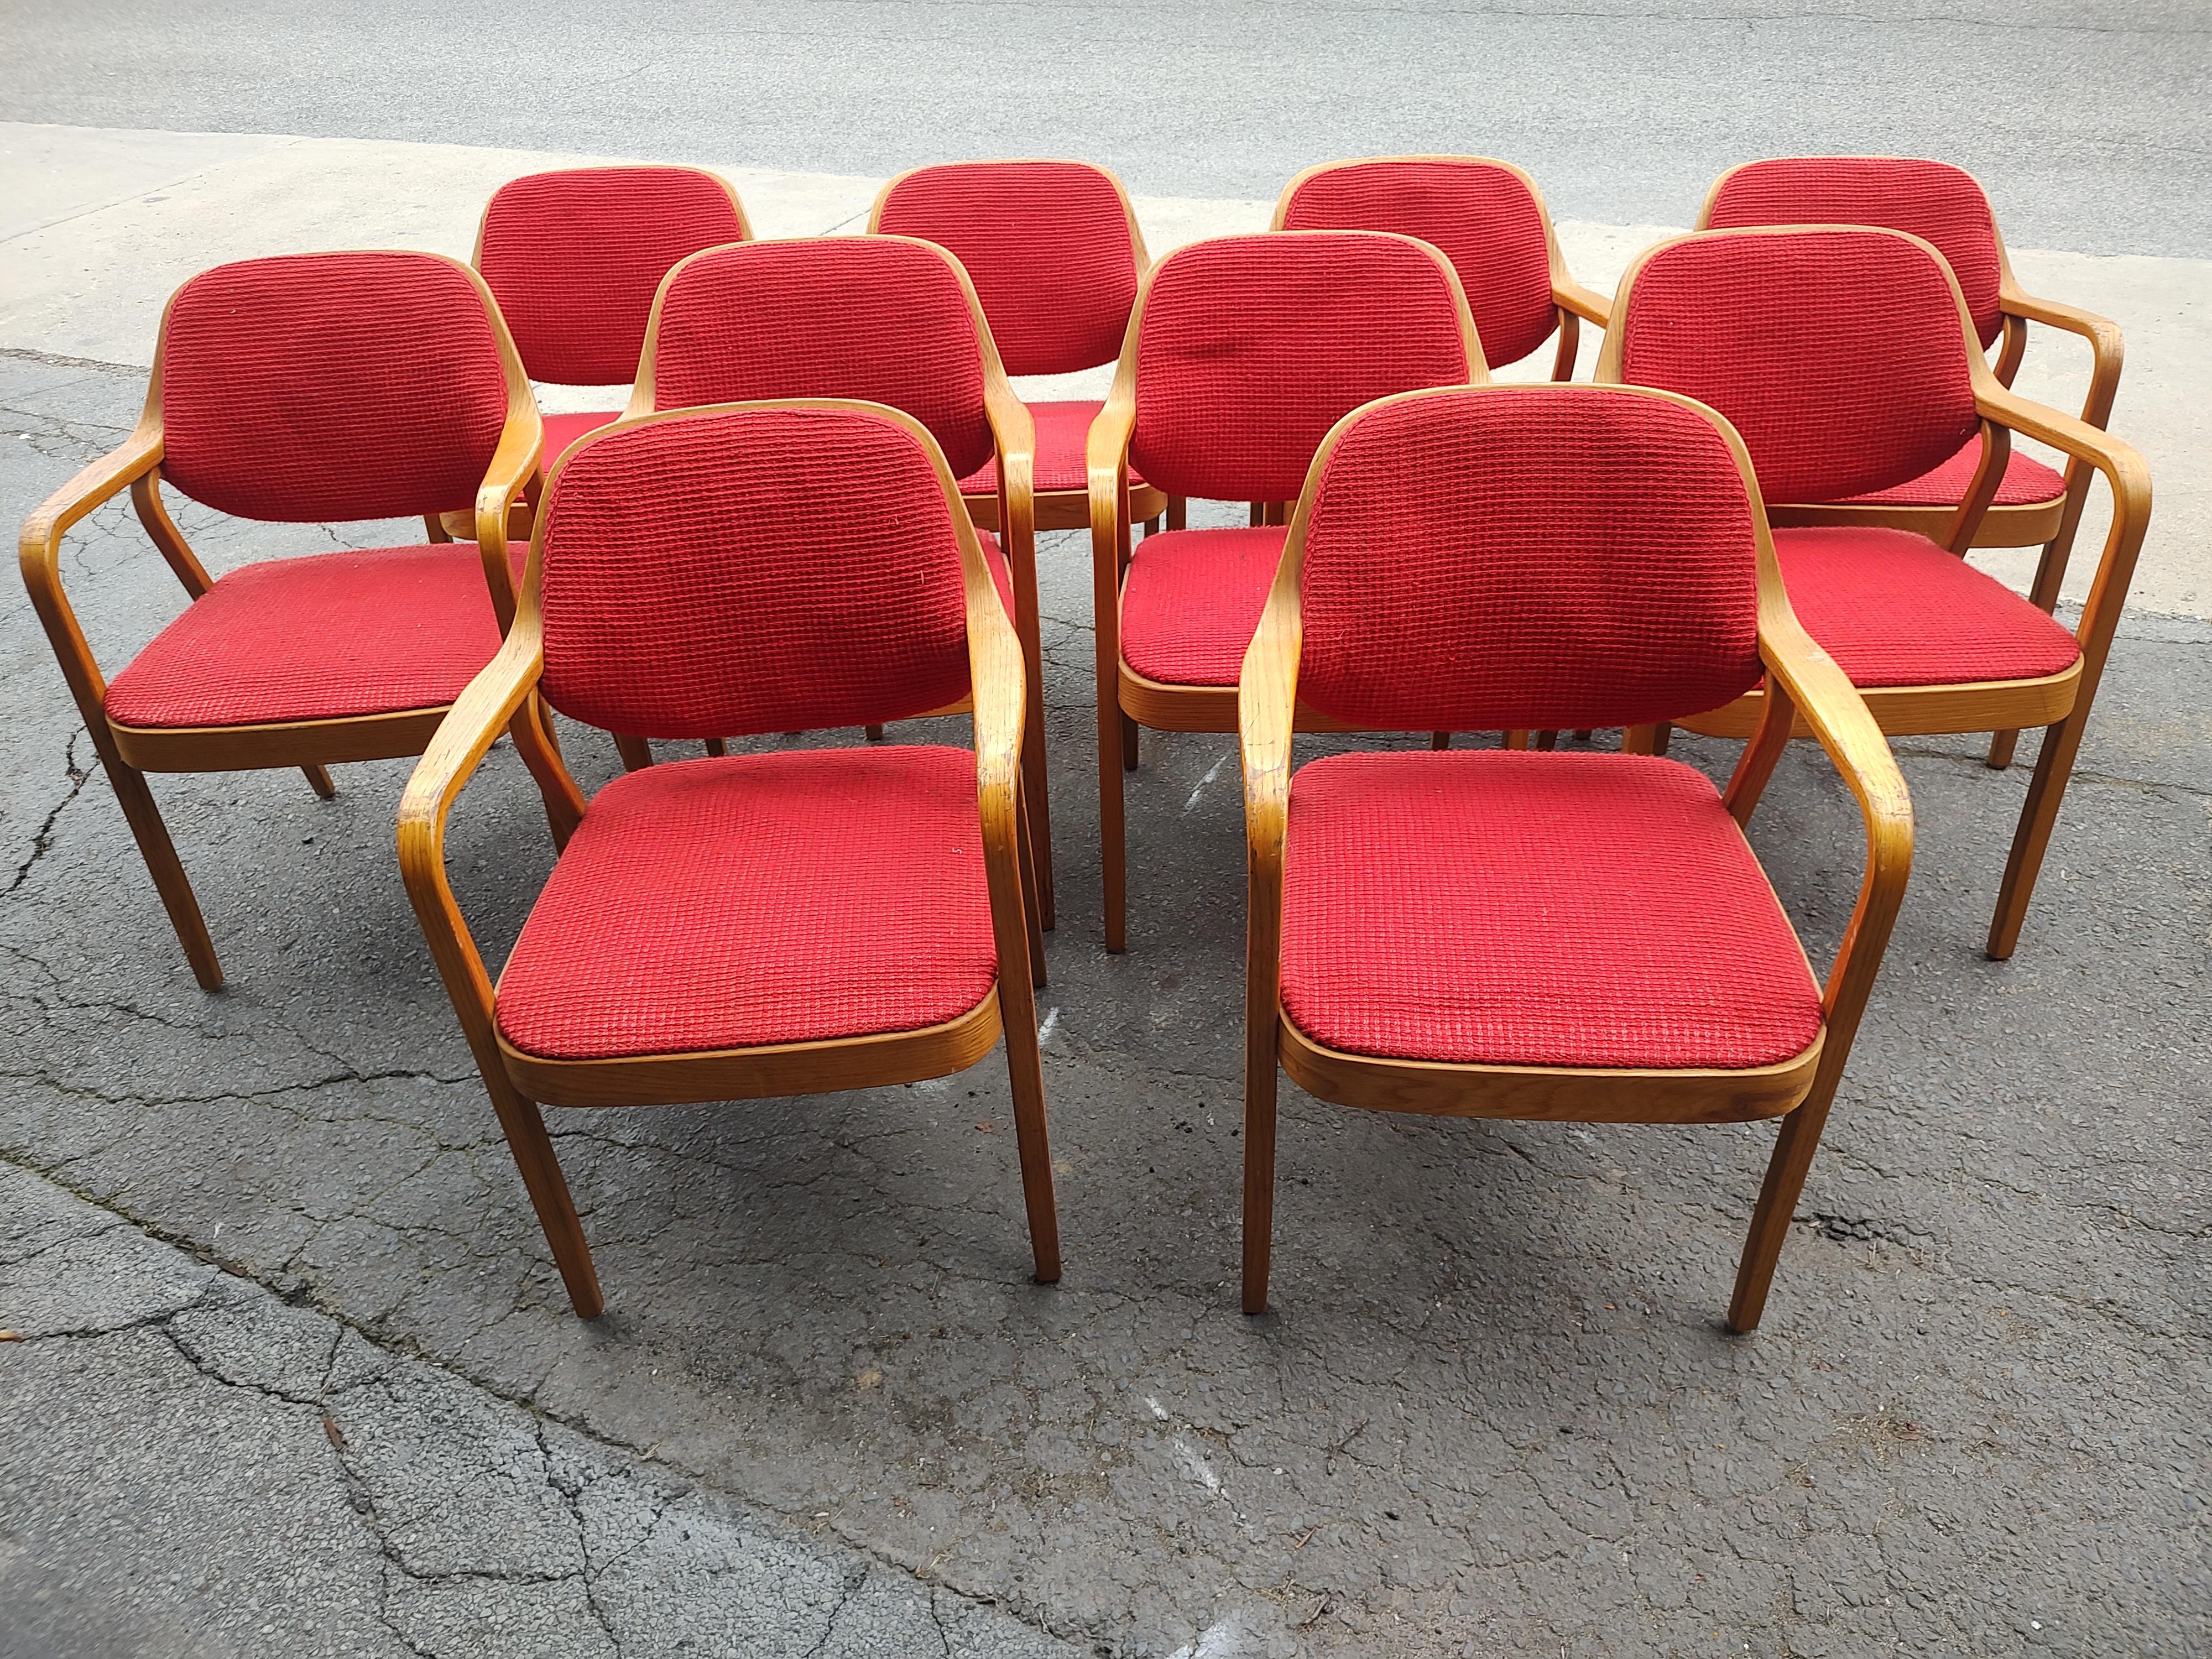 Grand ensemble de dix fauteuils pour salle à manger ou salle de conférence, conçu par Bill Stephens pour Knoll International. Créée à partir de chêne et pliée à la vapeur pour satisfaire l'œil et le corps. Très robuste et confortable. Le tissu et la